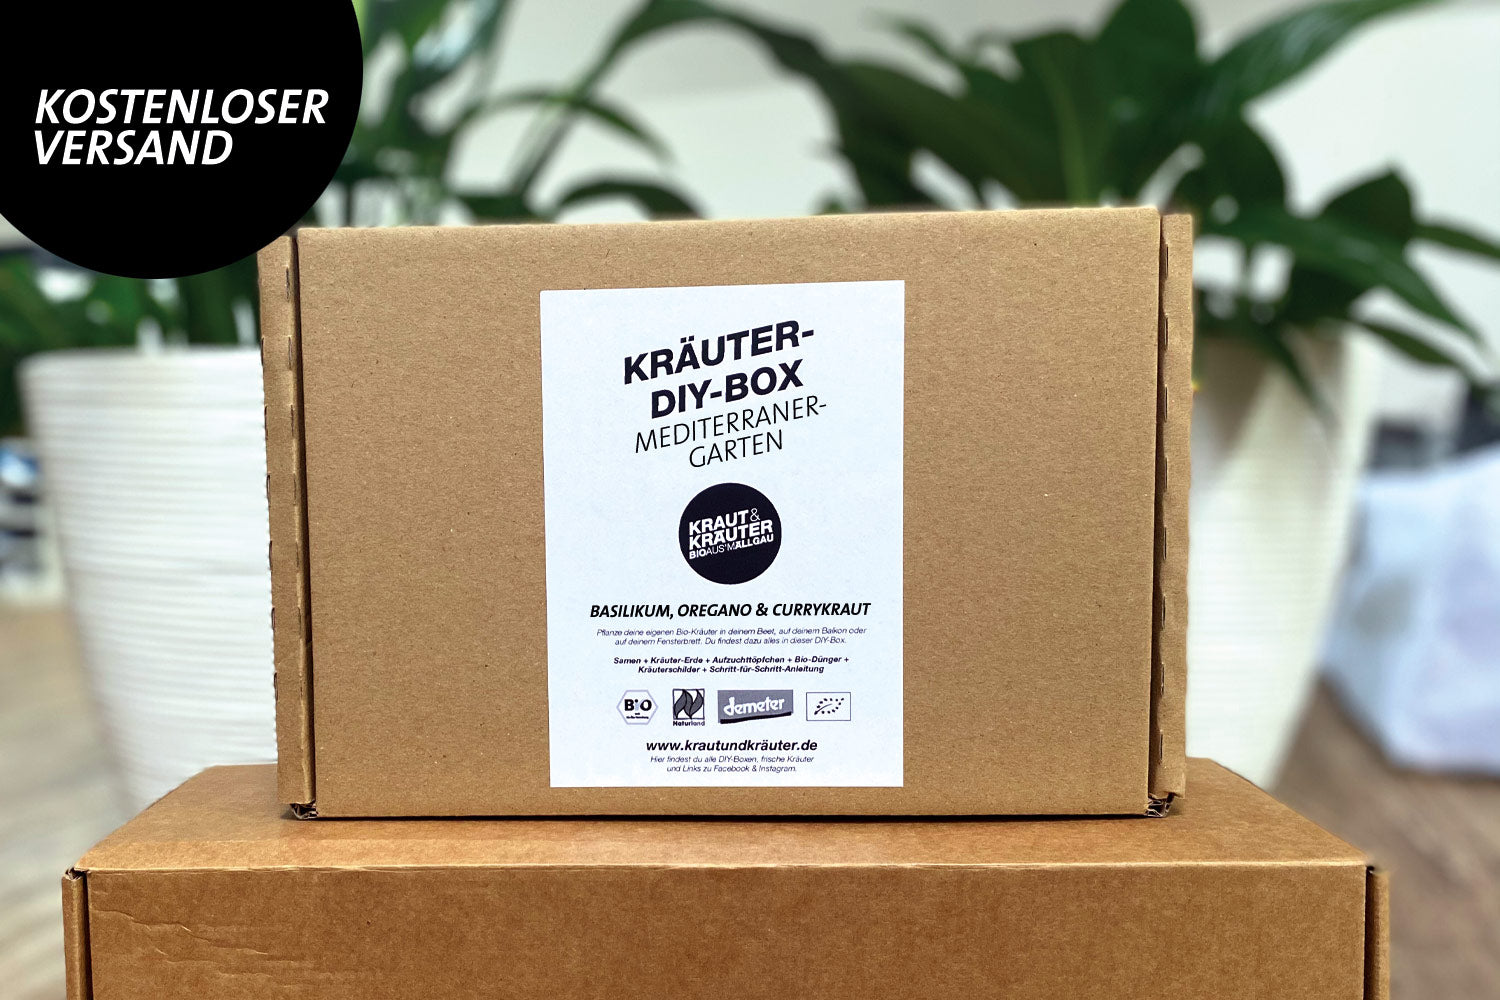 Kräuter-DIY-Box Mediterraner Garten